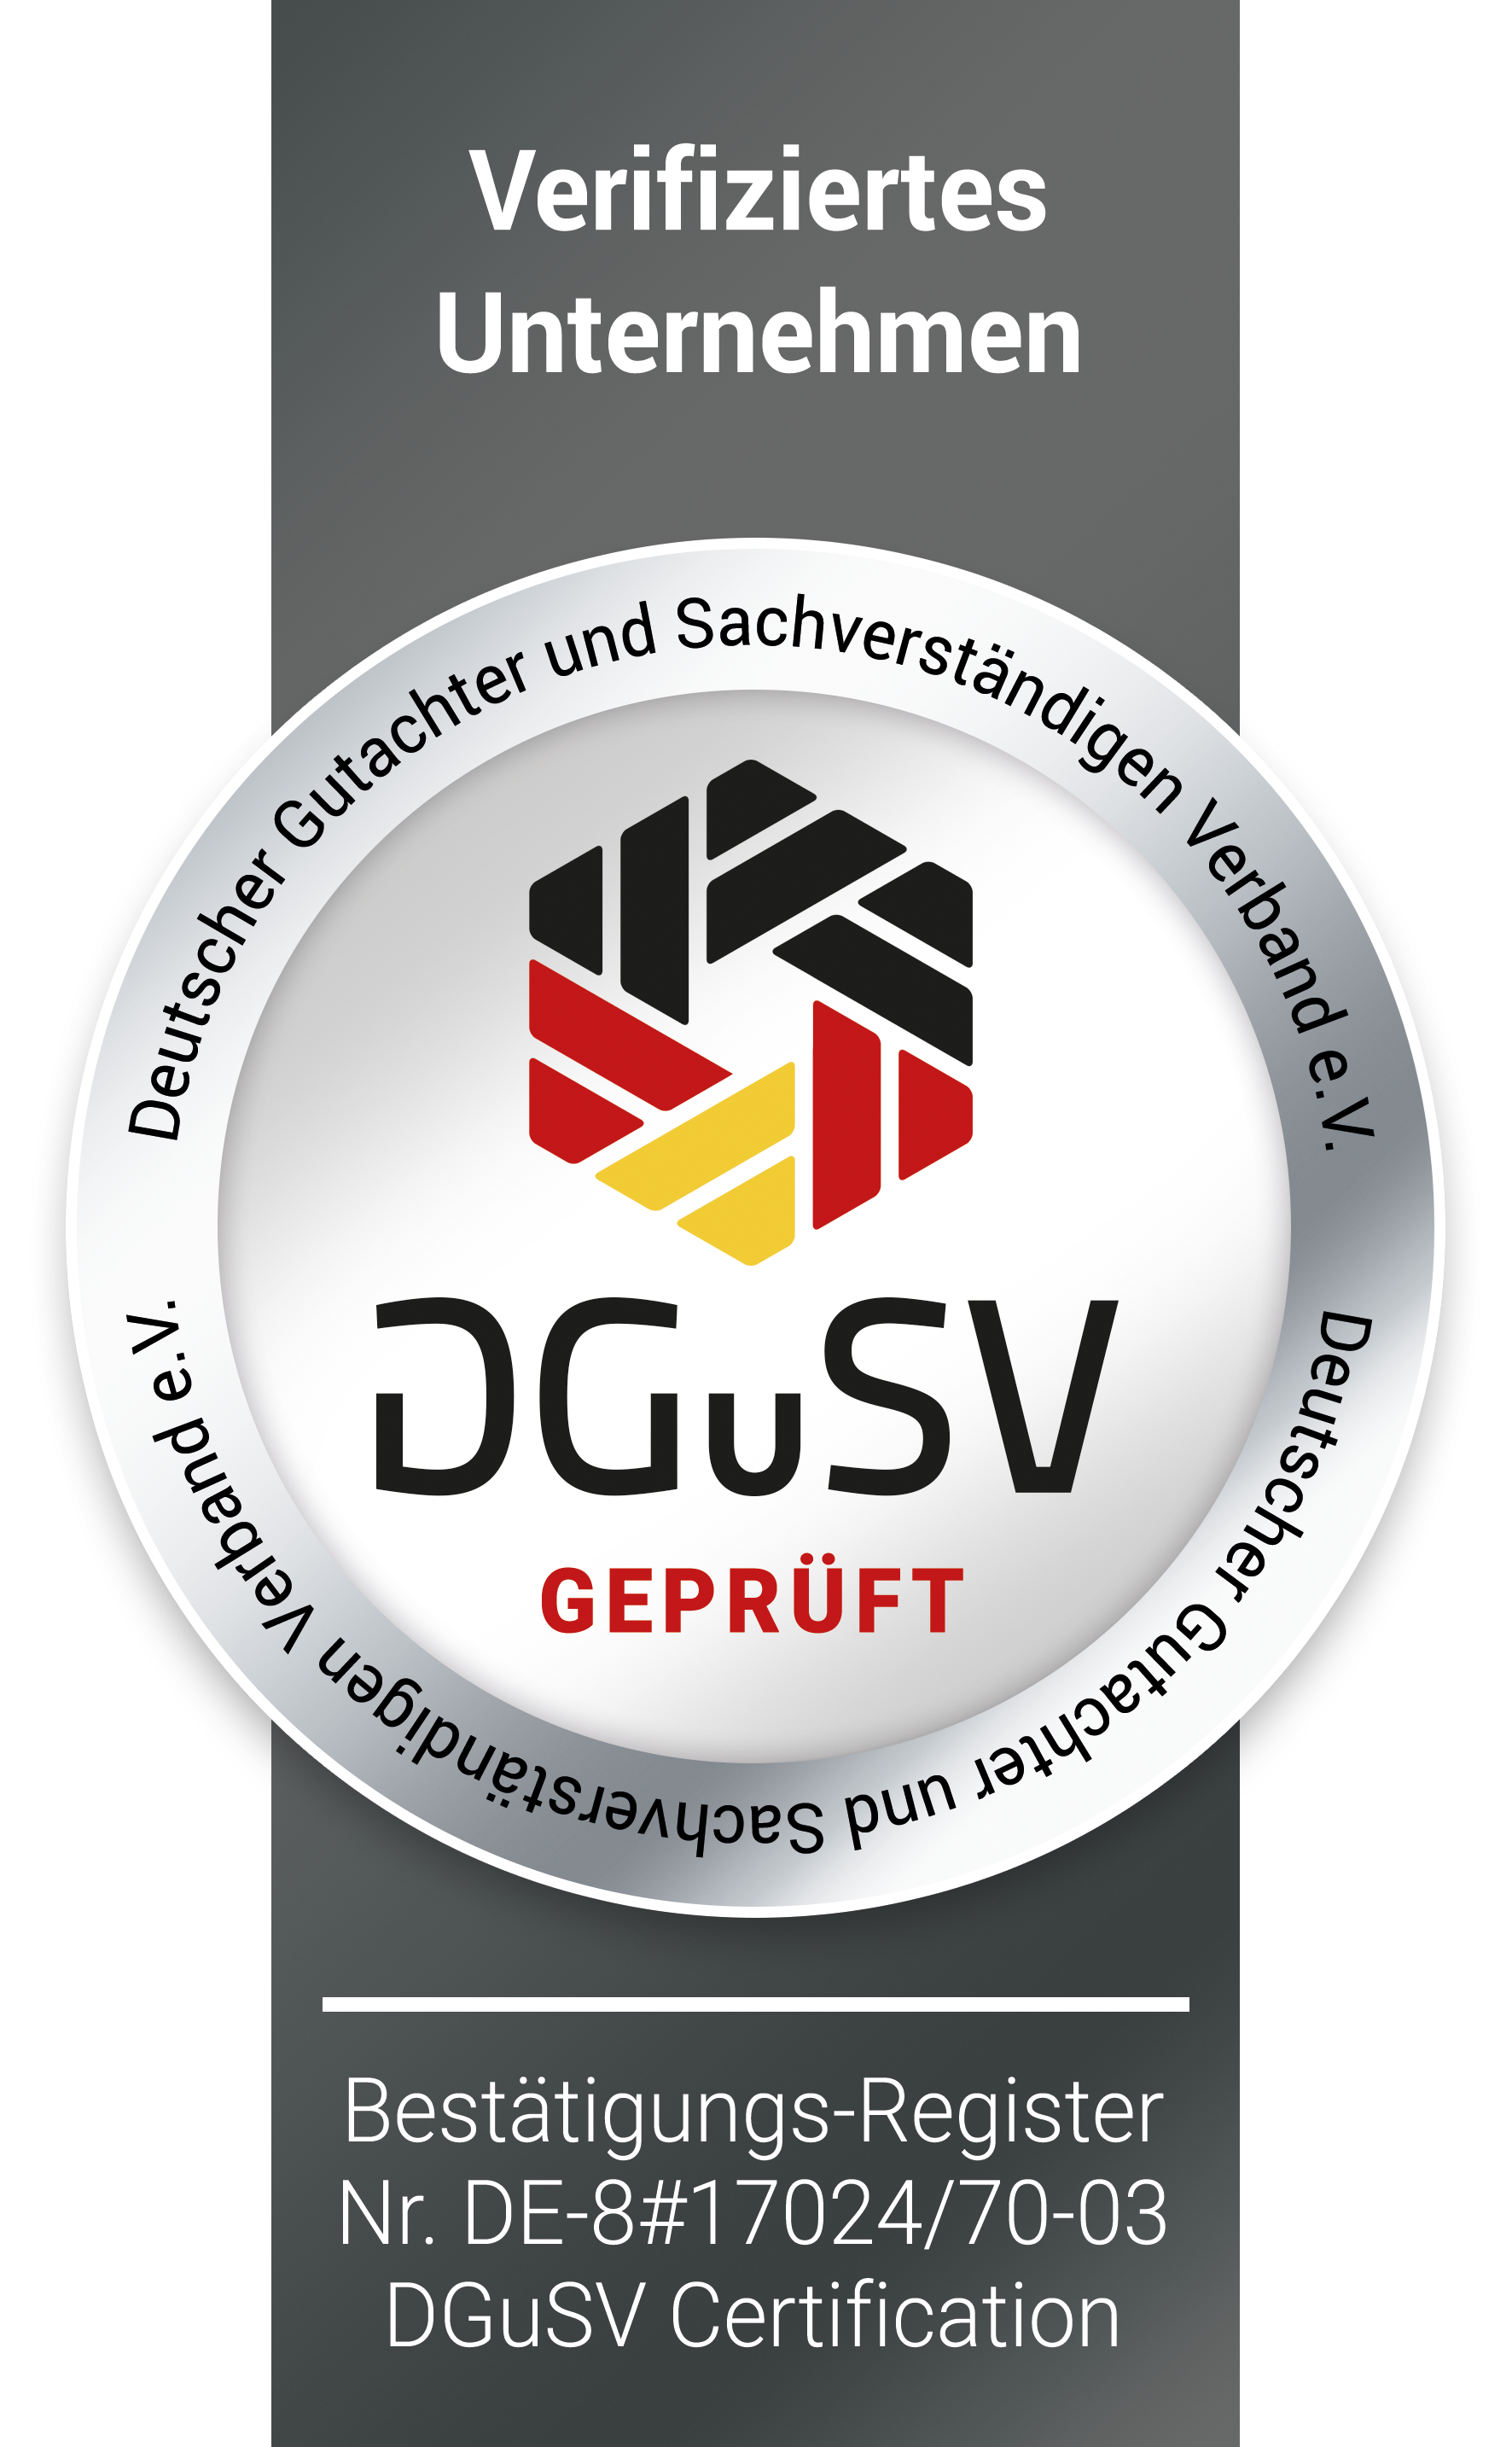 Deutscher Gutachter und Sachverständigen Verband e.V. - verifiziertes Unternehmen